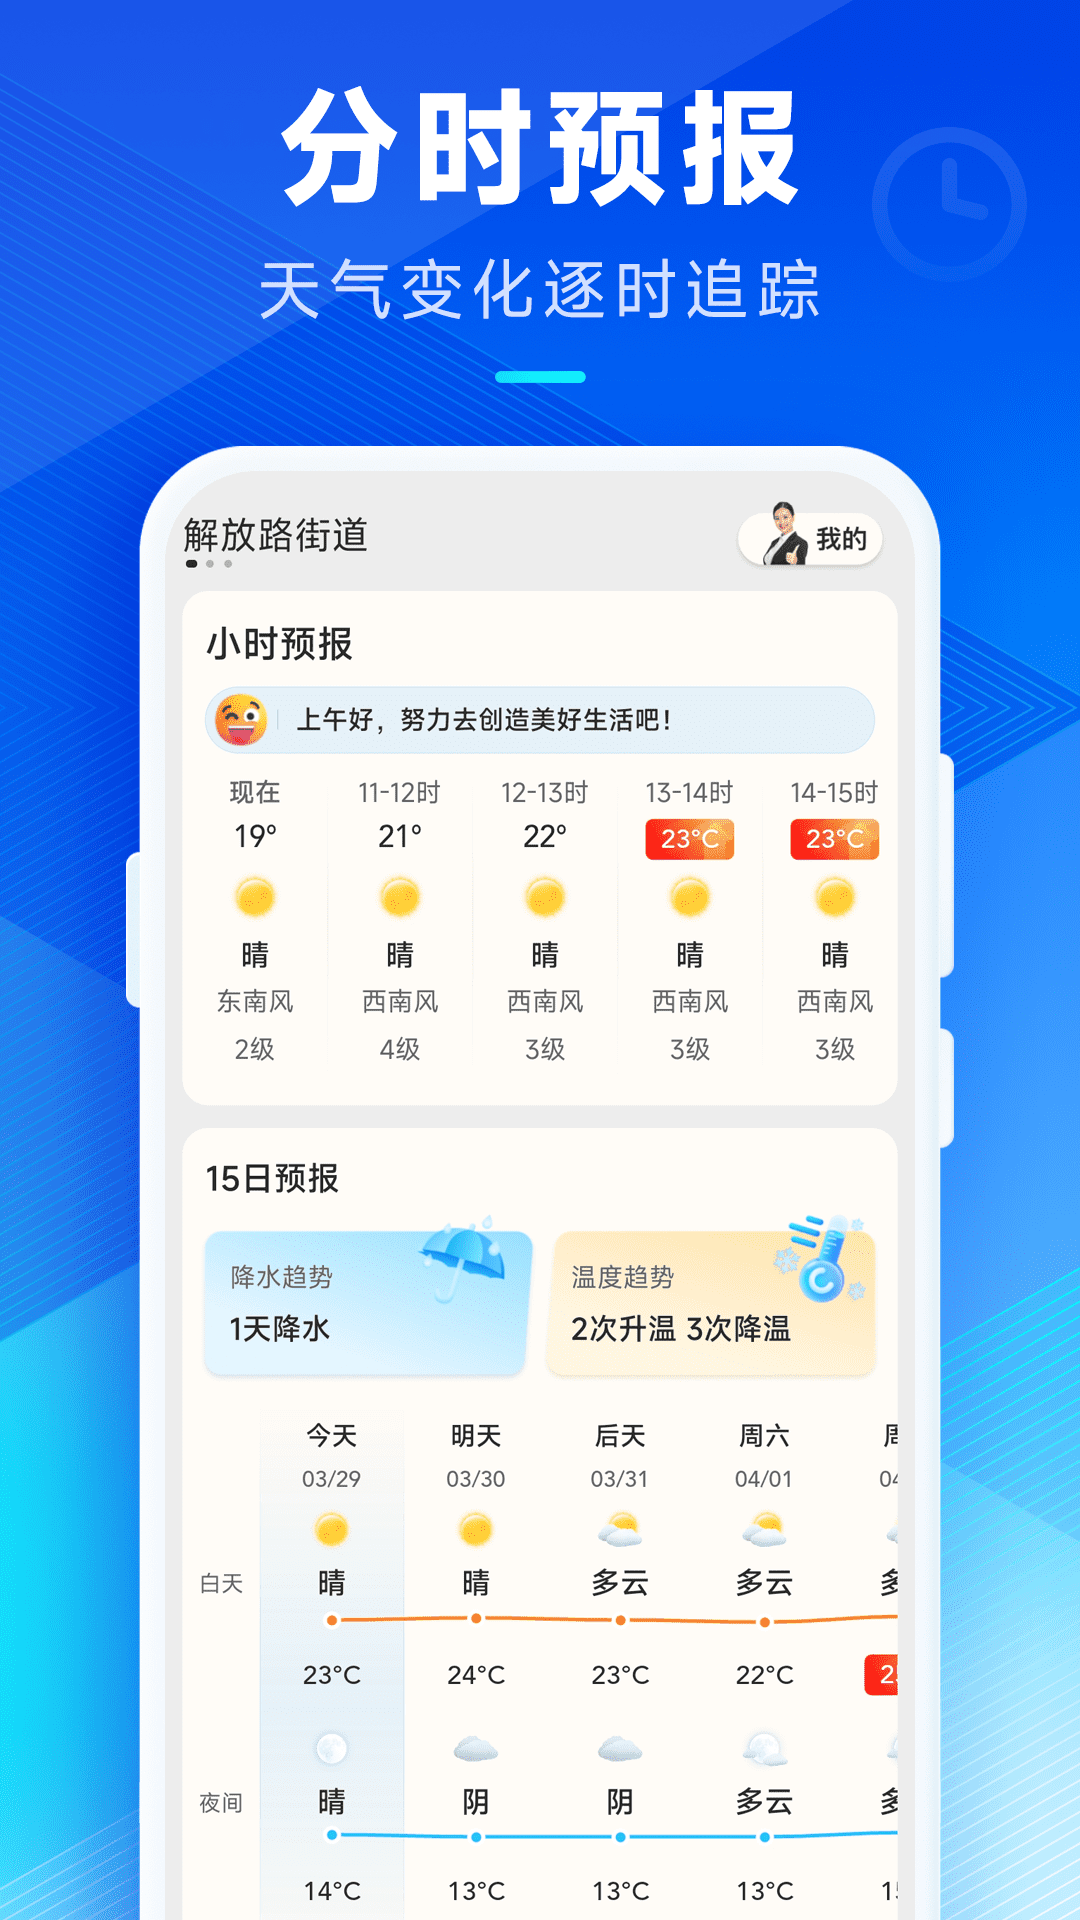 希望天气最新版下载,希望天气预报App最新版 v2.10.00